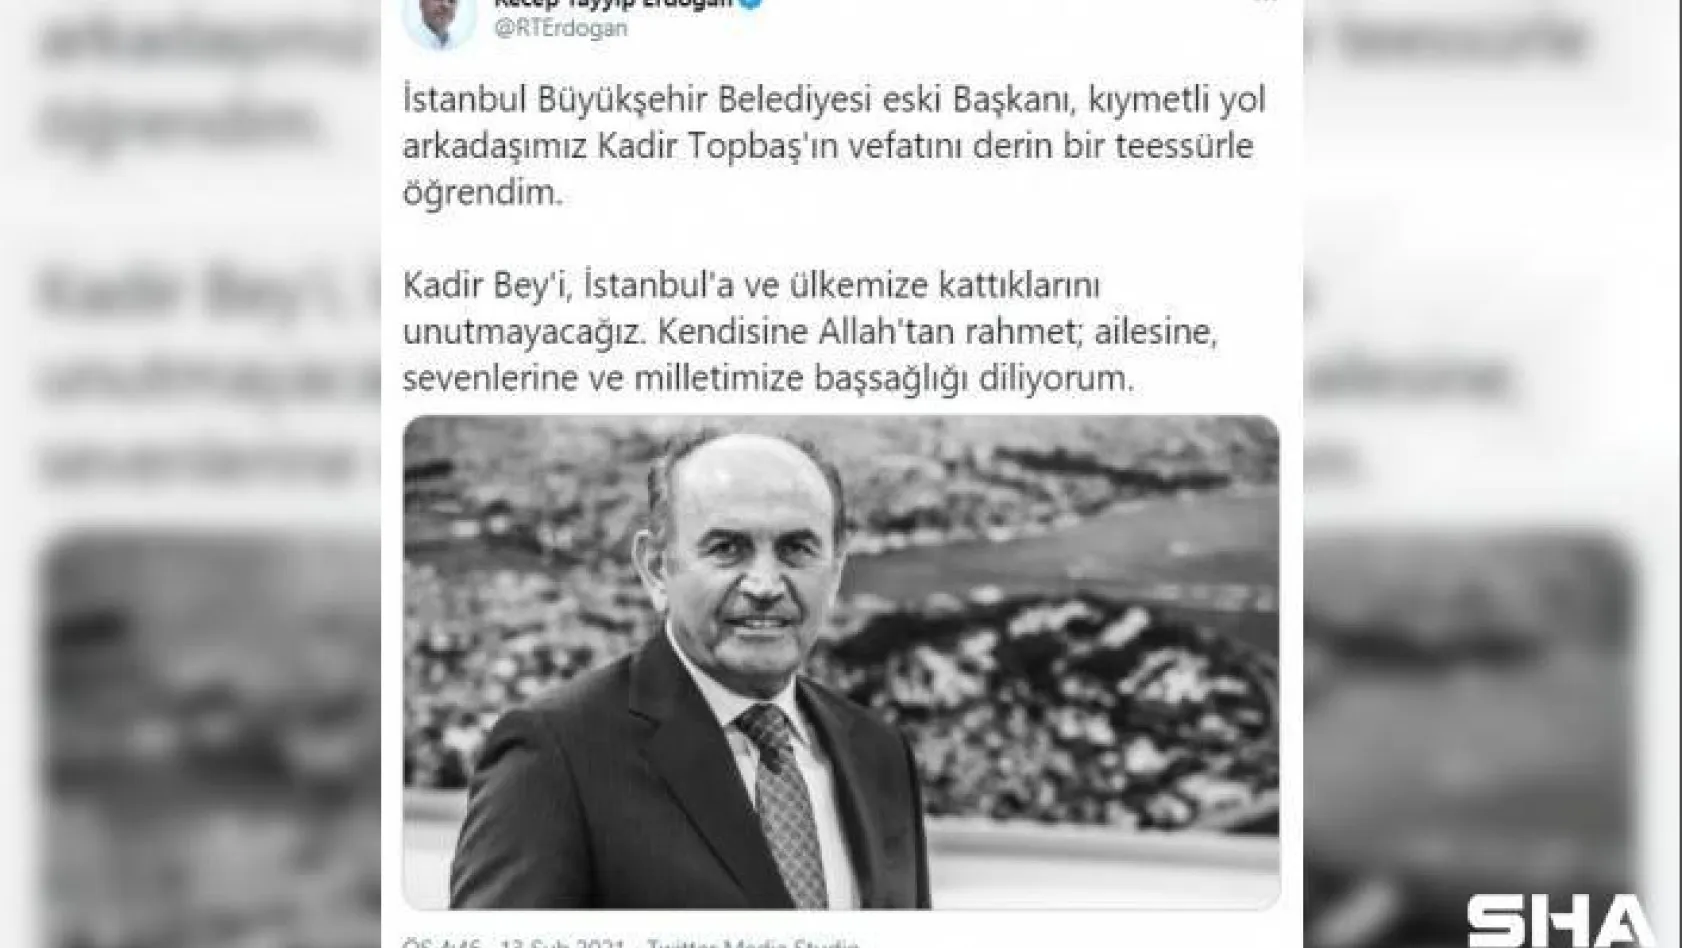 Cumhurbaşkanı Recep Tayyip Erdoğan'dan Kadir Topbaş paylaşımı